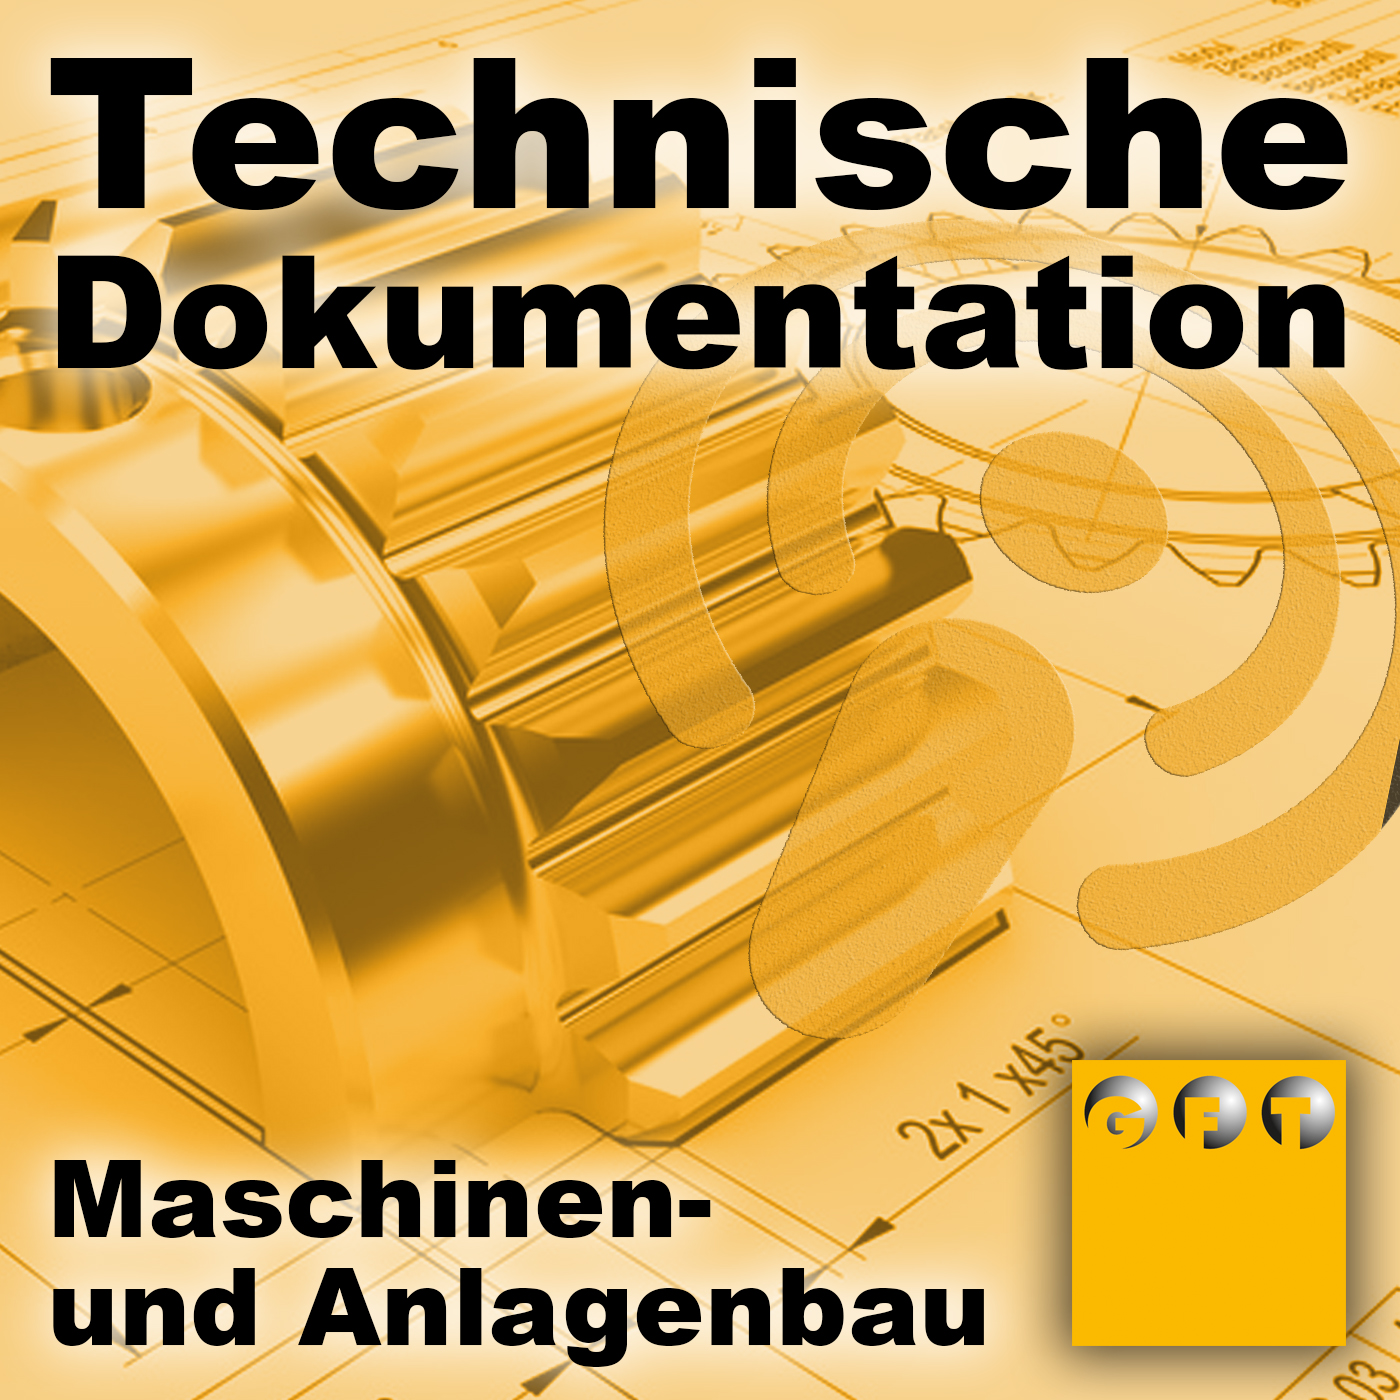 Technische Dokumentation - Der Podcast zu allen Themen der technischen Dokumentation